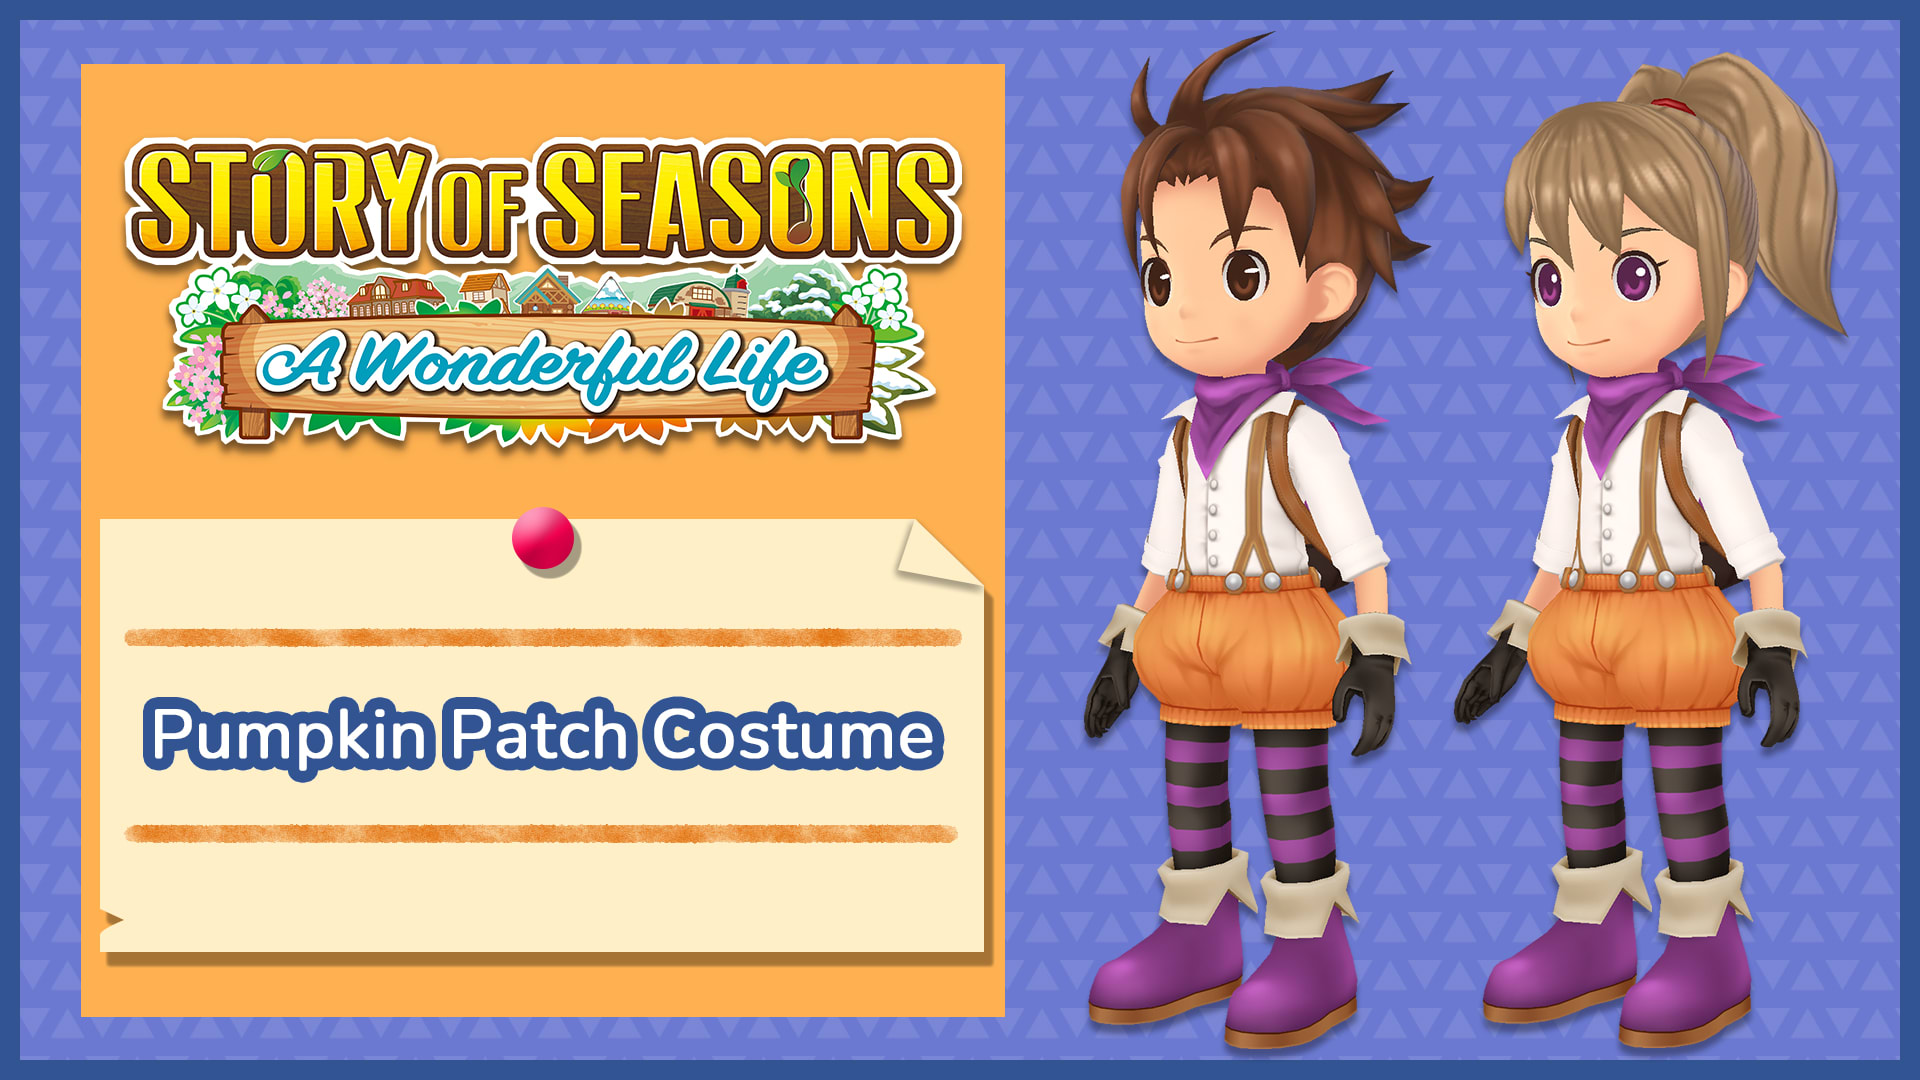 Pumpkin Patch Costume